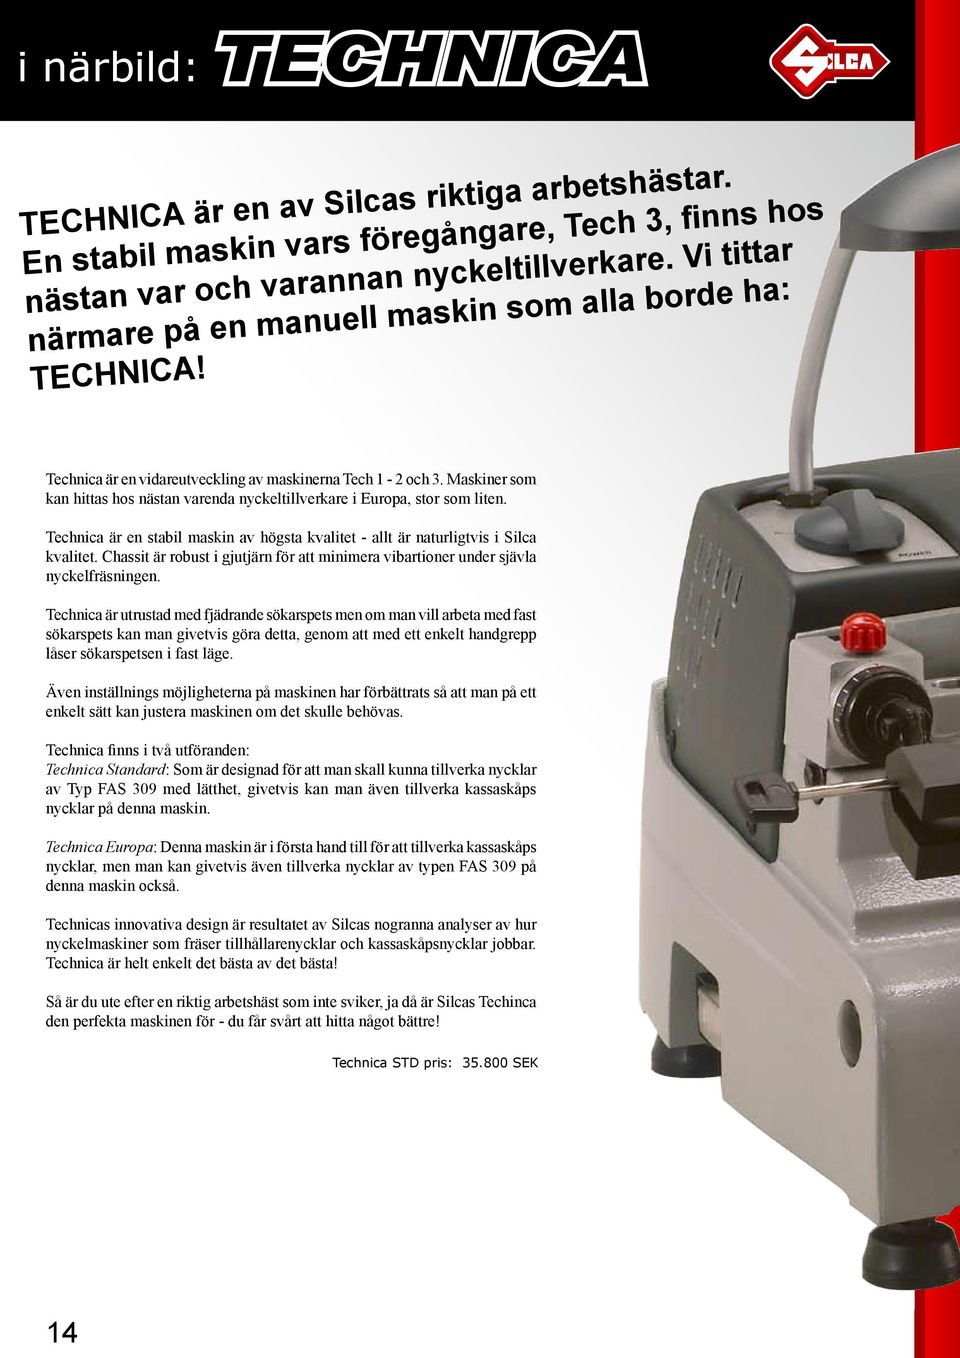 Maskiner som kan hittas hos nästan varenda nyckeltillverkare i Europa, stor som liten. Technica är en stabil maskin av högsta kvalitet - allt är naturligtvis i Silca kvalitet.